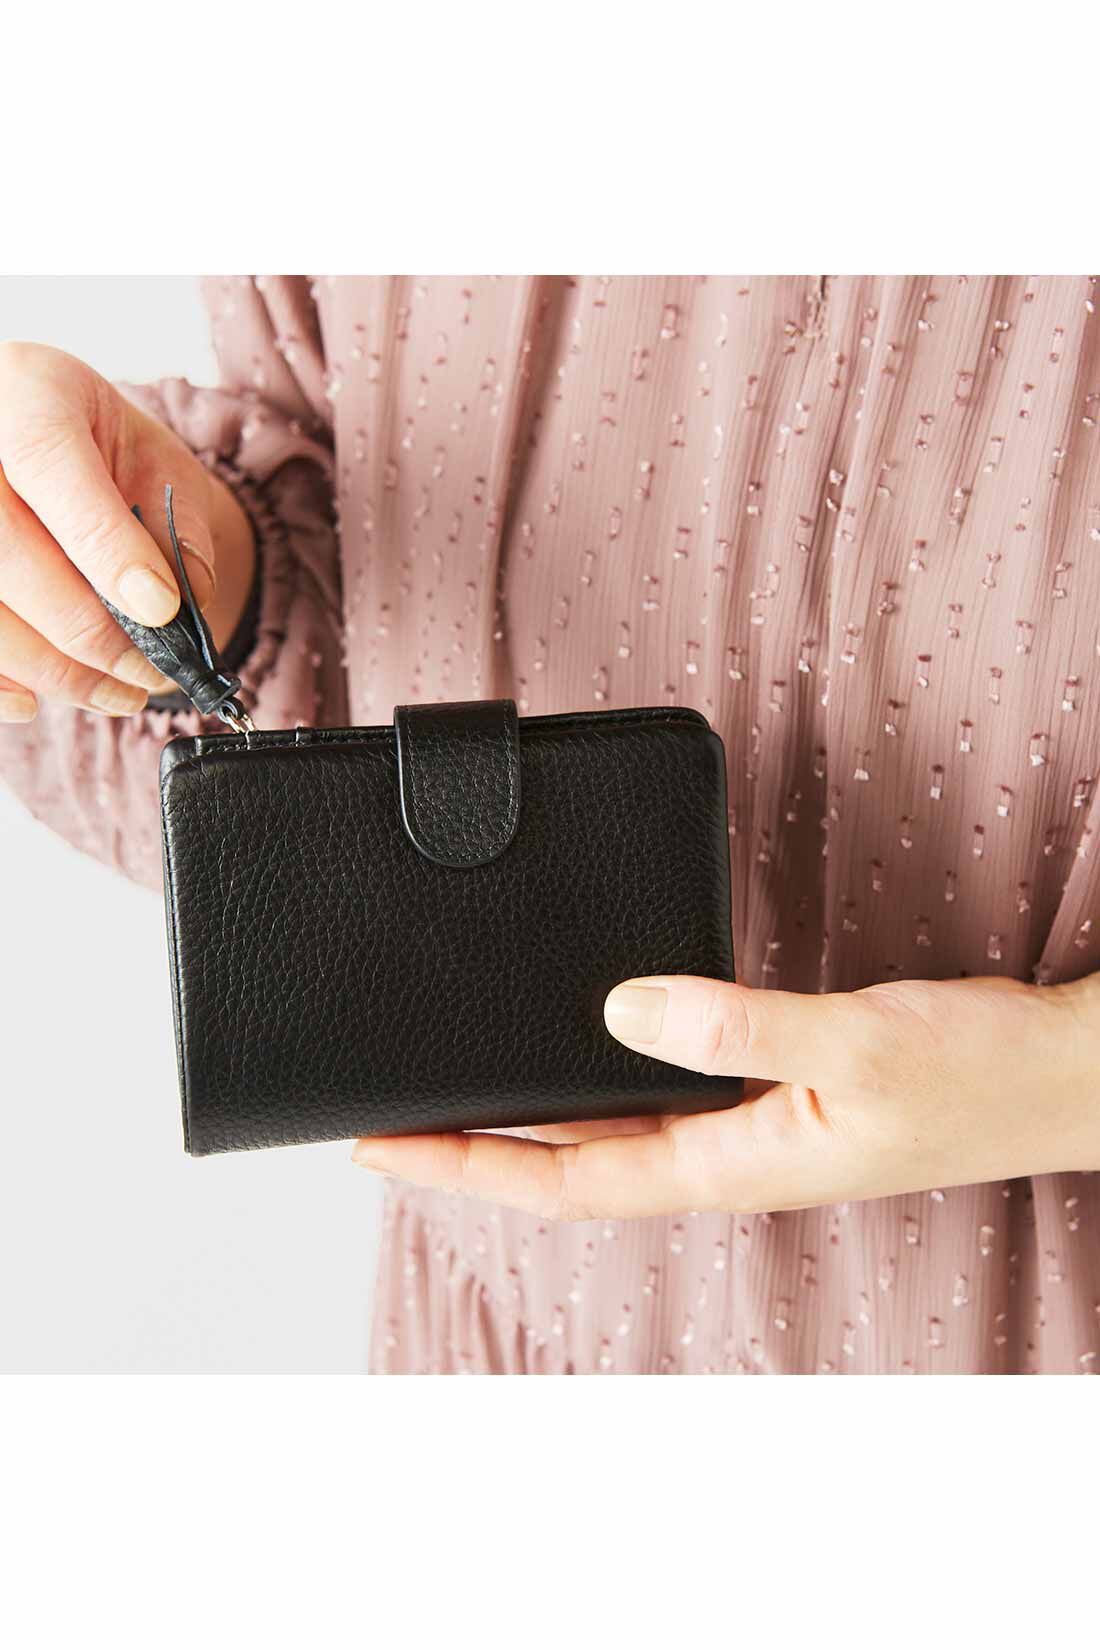 IEDIT[イディット]　くったり本革素材できれいめ二つ折り財布〈ブラック〉|手のひらに収まるコンパクトなサイズ感。